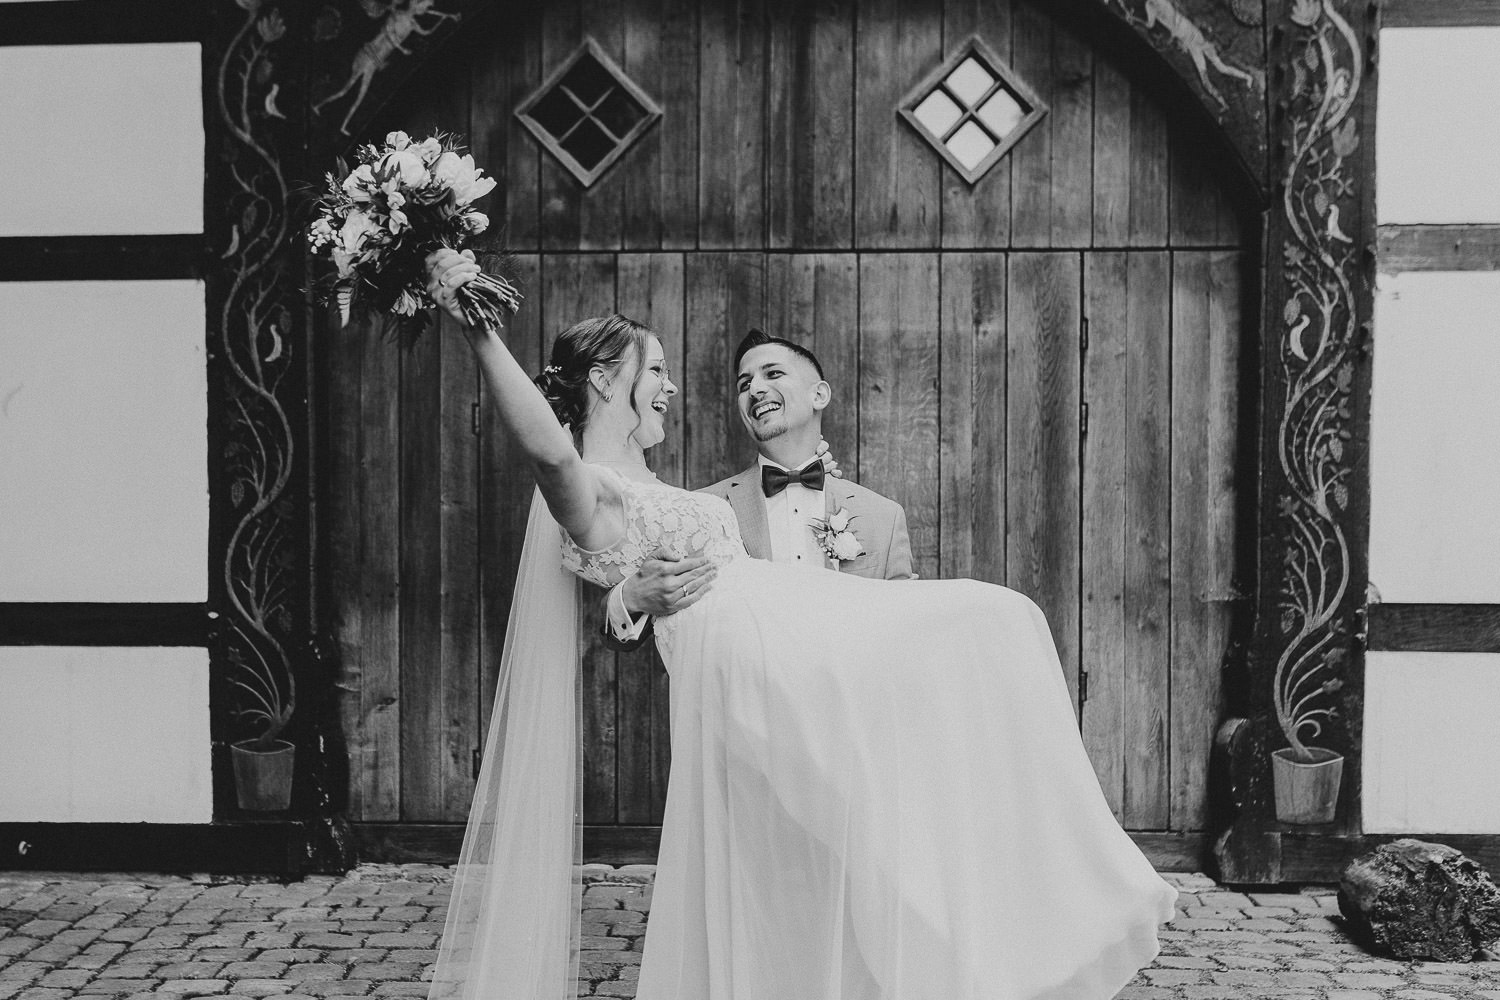 Hochzeitsfoto vor Fachwerkhaus. Der Bräutigam trägt seine Braut auf den Armen, die Braut hält ihren Brautstrauß in die Luft.